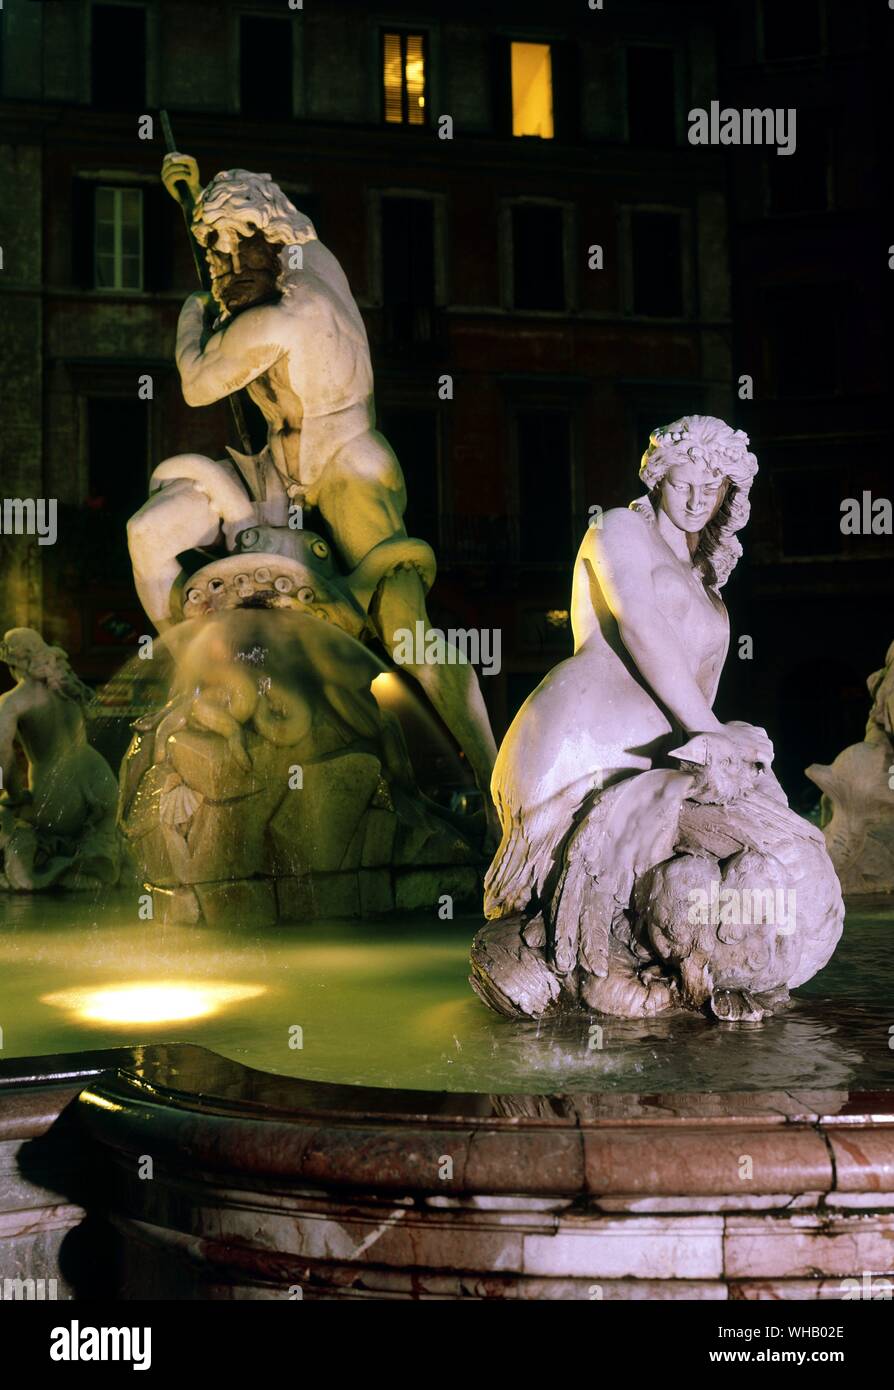 Les eaux de Rome par H. C. Morton. Le groupe de Neptune de la fontaine du nord dans la Piazza Navona, Rome. Pl. 17, p. 114. . Banque D'Images